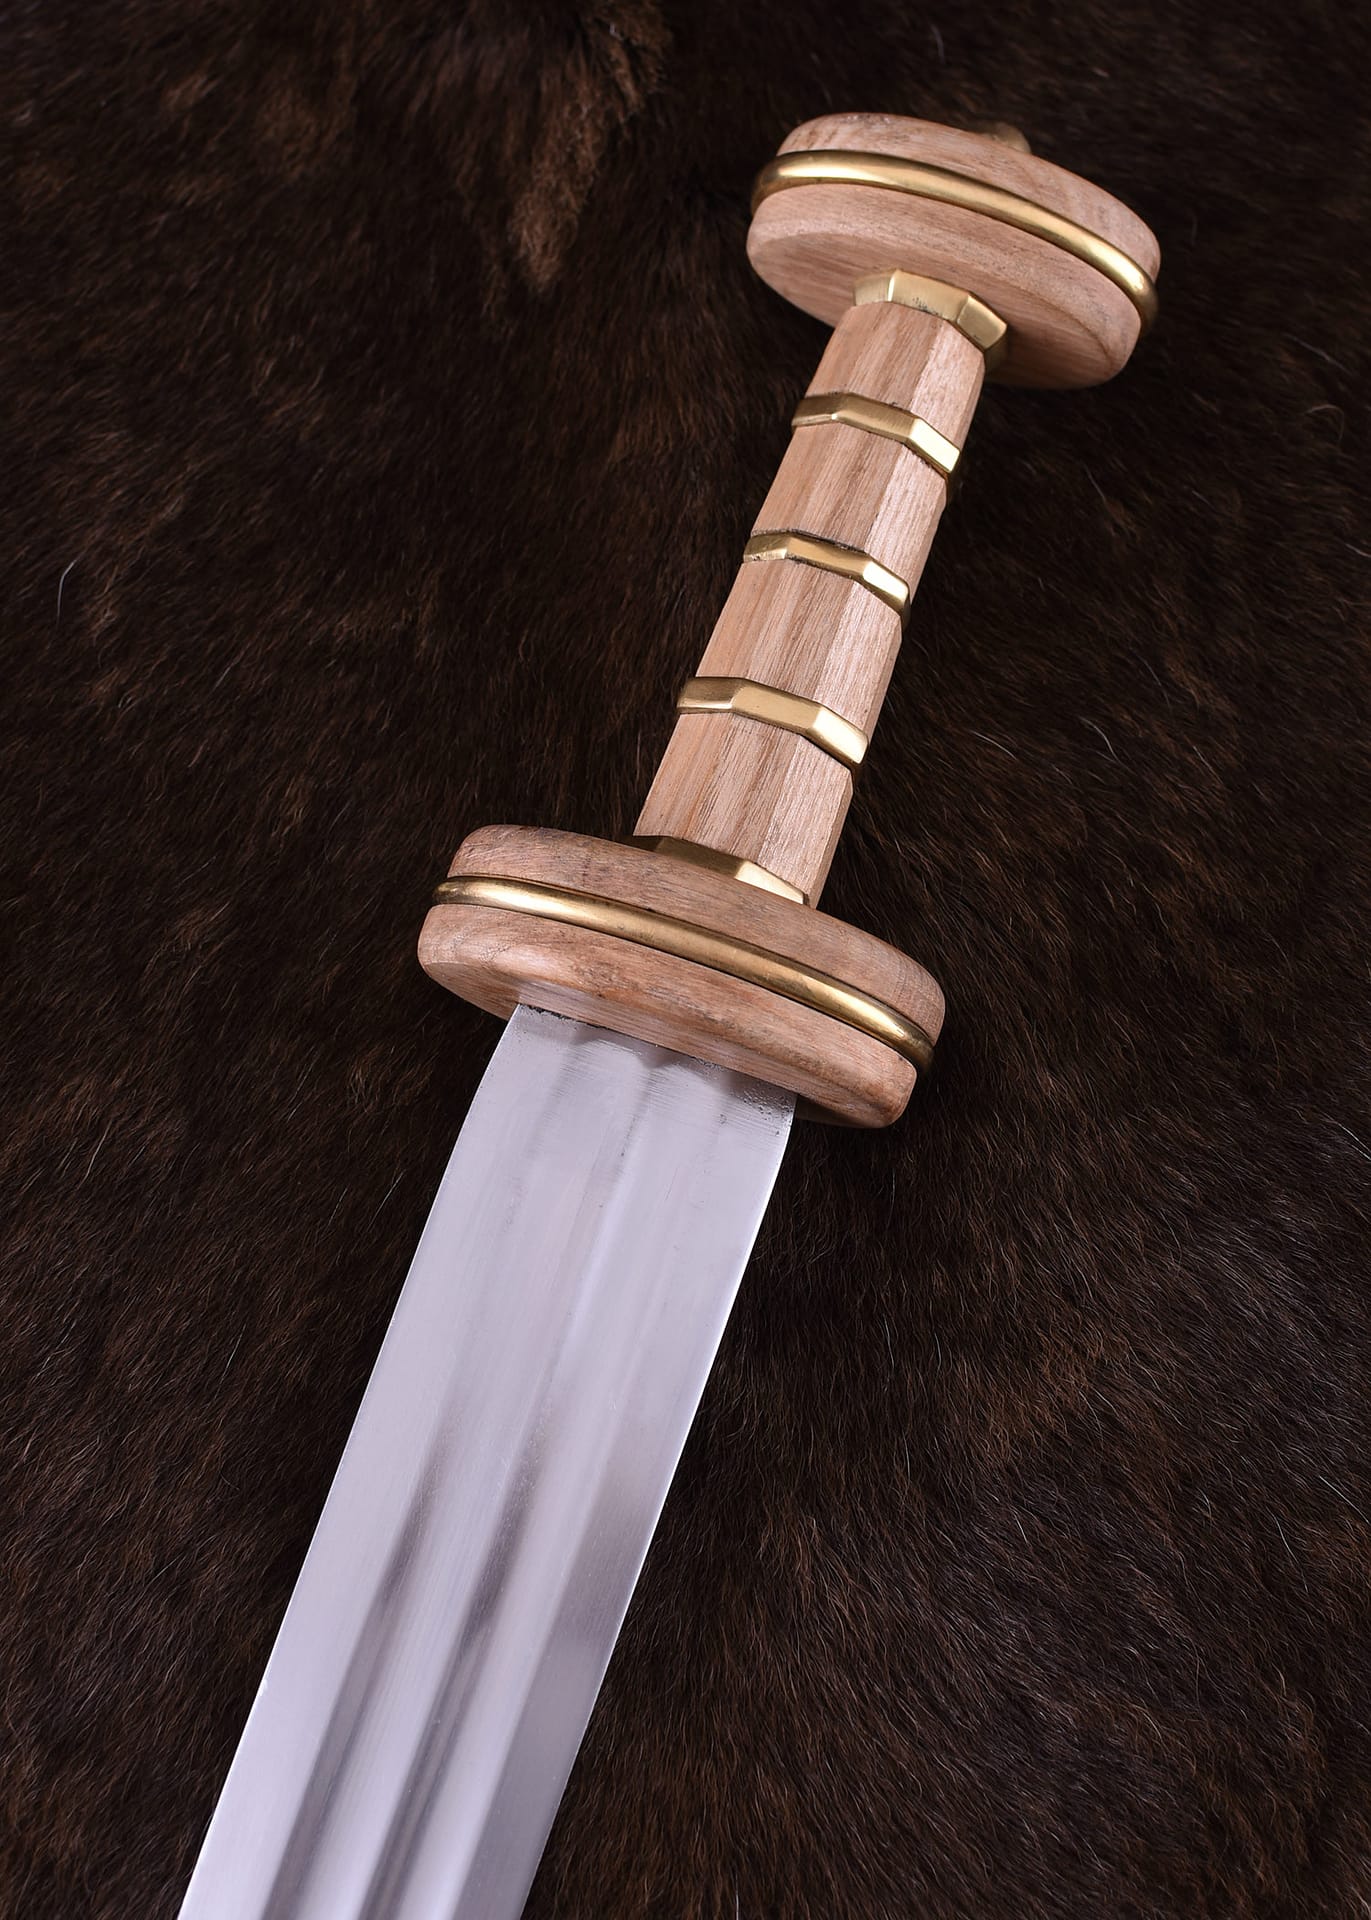 Espada romana tipo Podlodów con vaina, siglo III 0116201100 - Espadas y Más